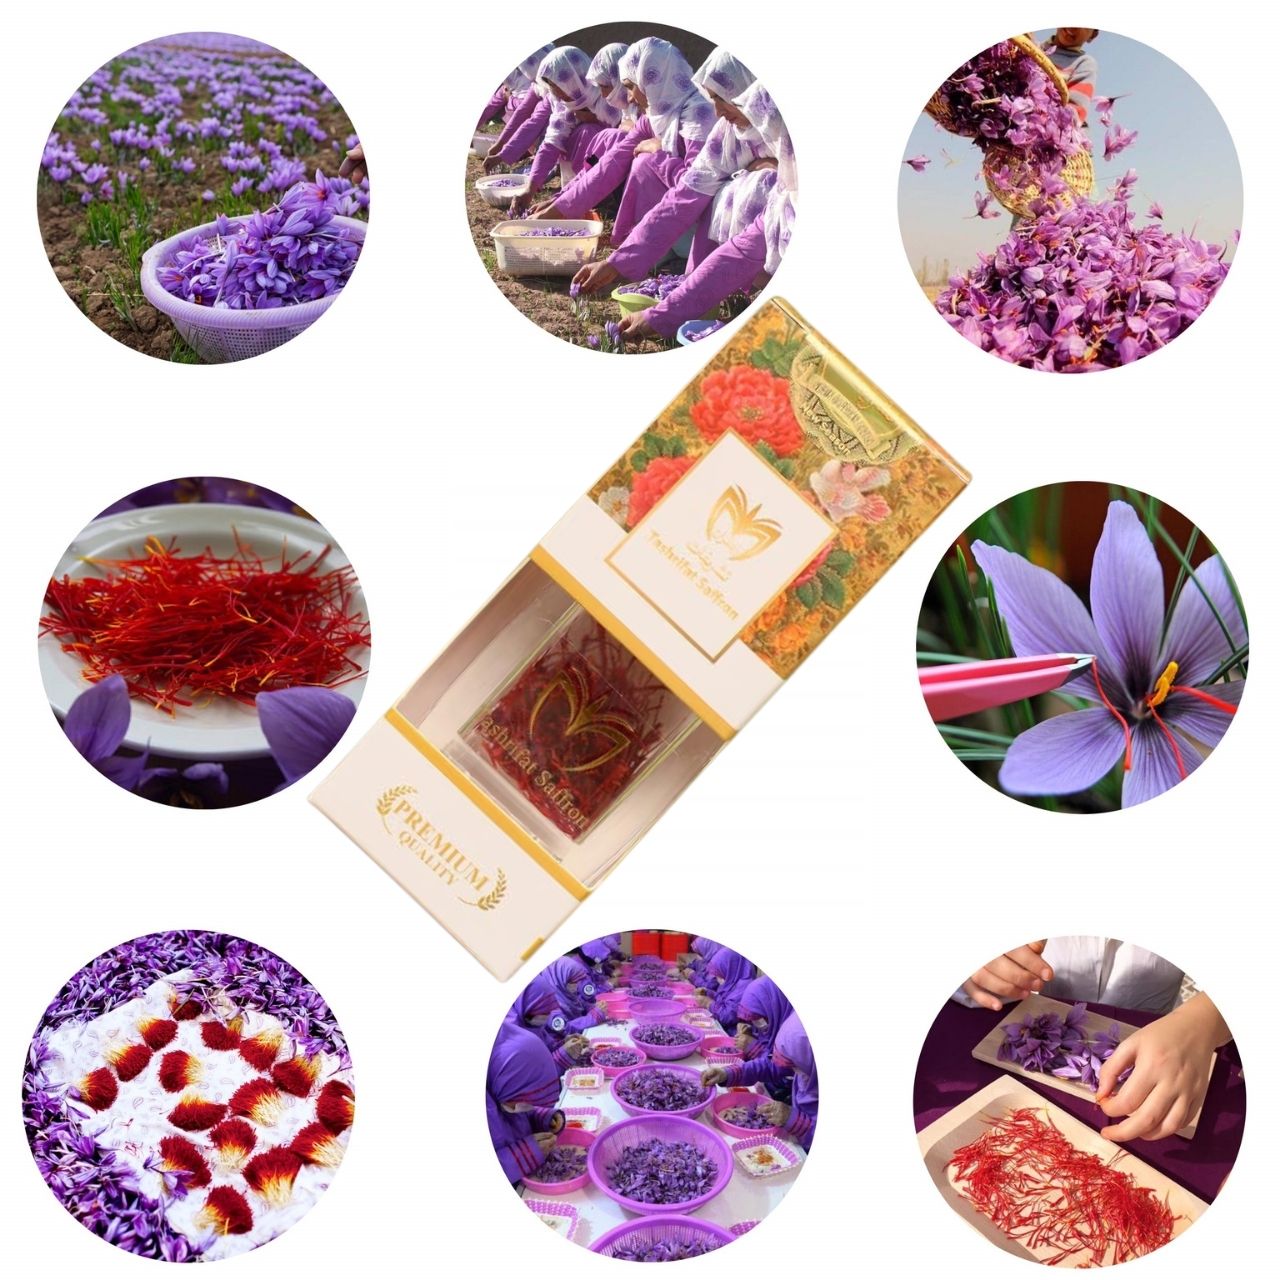 Nhụy hoa nghệ tây Tashrifat Saffron Premium Negin Iran chống lão hóa, làm sáng da,Tăng đề kháng, giảm stress, cải thiện giấc ngủ - Massel Official